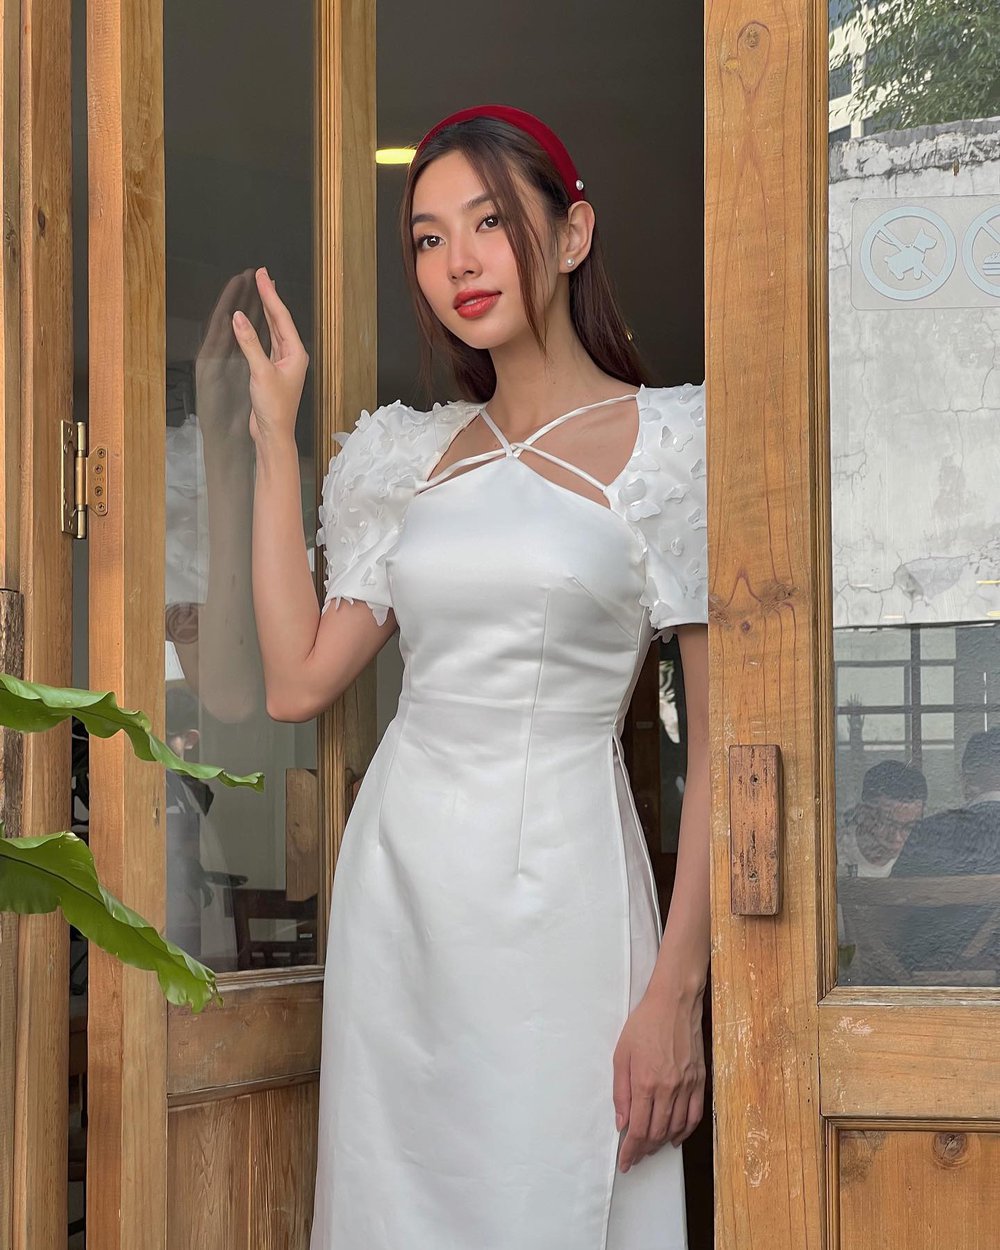 Mê mệt loạt áo dài Tết của Hoa hậu Thùy Tiên: Toàn đồ local brand quen mặt, thiết kế điệu đà cứ diện là xinh - ảnh 3